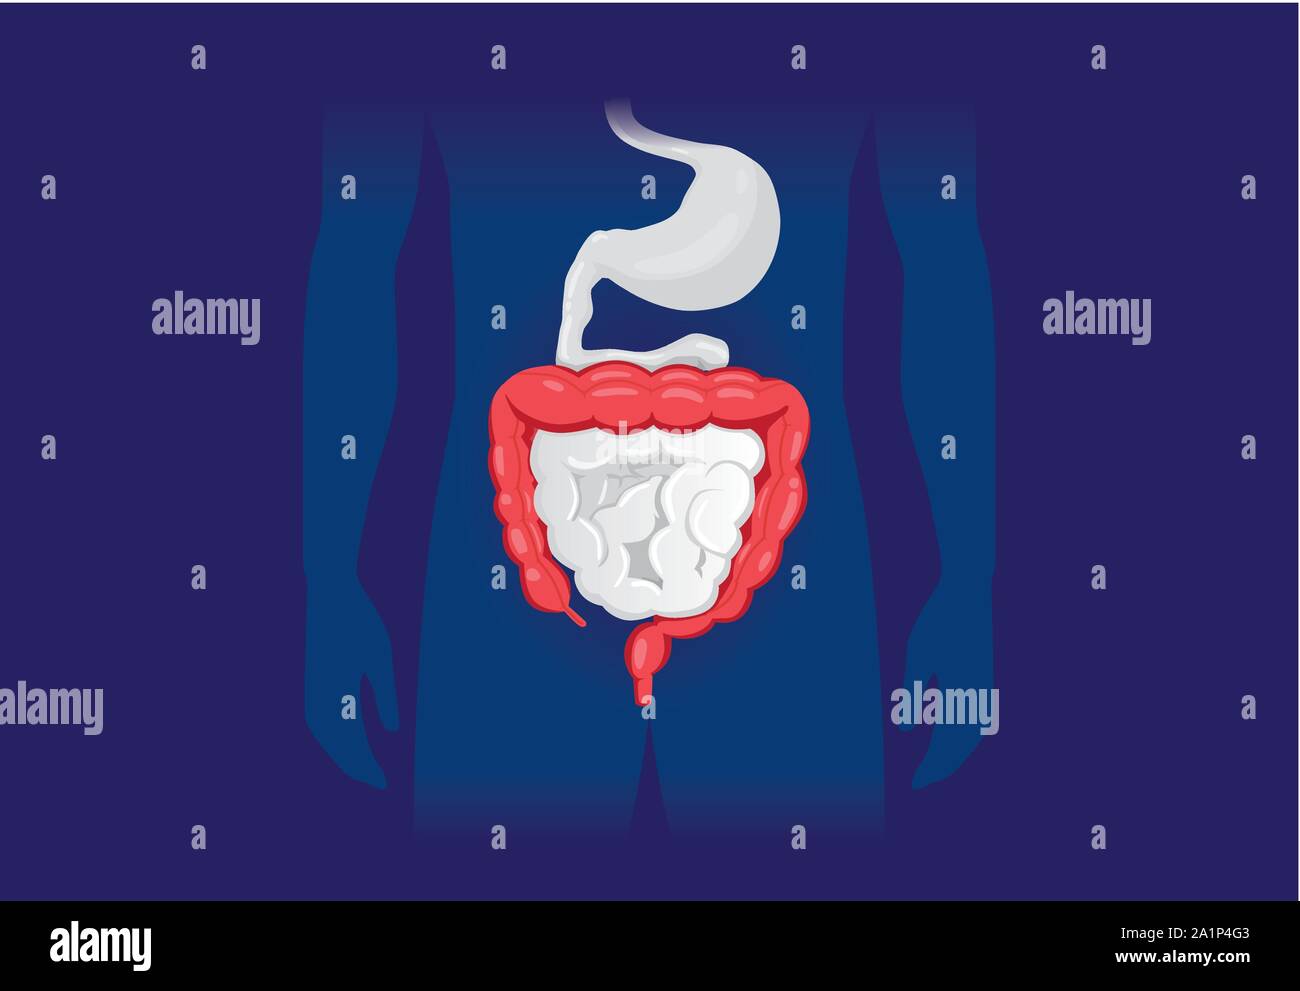 Illustrazione circa sintomo anormale di umana intestino crasso. Illustrazione Vettoriale